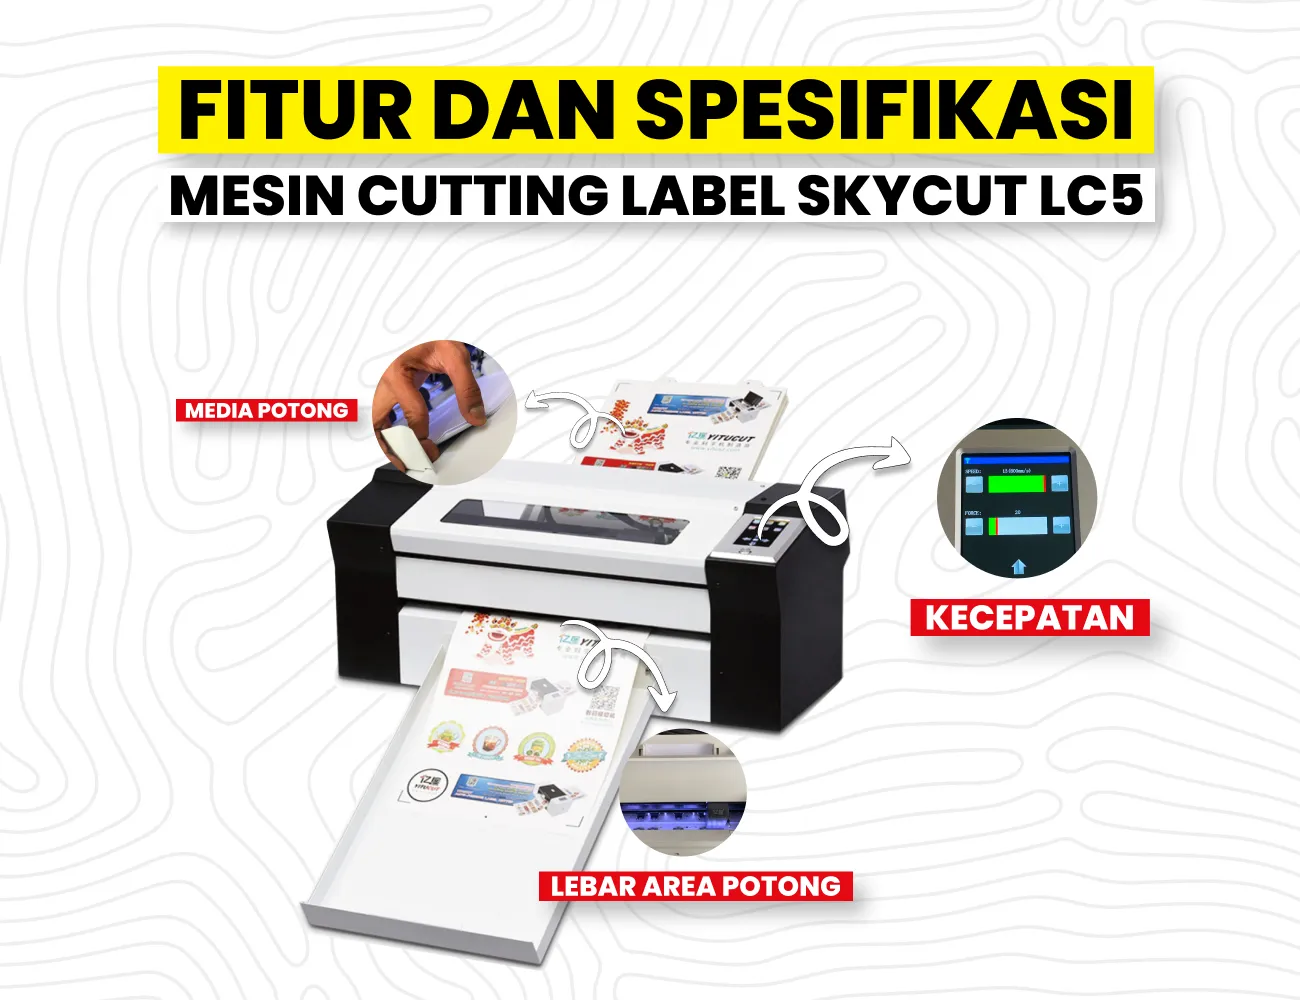 Fitur Utama Mesin Cutting Label Auto-Feeding Skycut Lc5 Mencakup Kecepatan Cetak Dan Kapasitas Produksi.